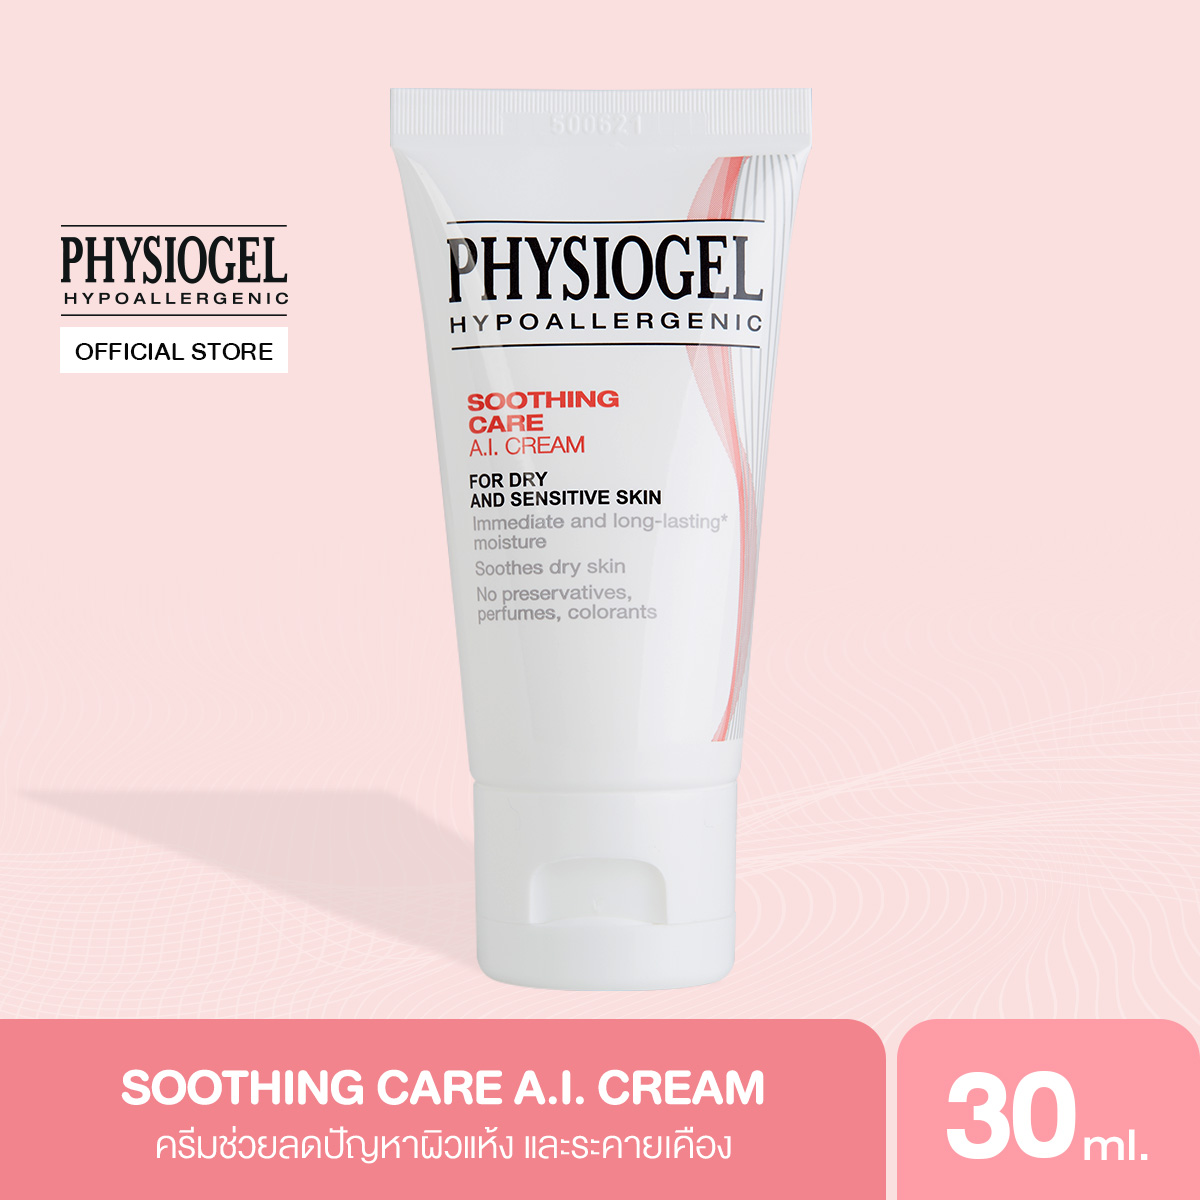 โปรโมชั่น Physiogel ฟิสิโอเจล ซูธธิ่ง แคร์ เอ.ไอ. ครีม สำหรับผิวแห้งที่ไวต่อการระคายเคือง 30 มล. Physiogel Soothing Care A.I. Cream for Dry, Irritated, Sensitive Skin, 30ml